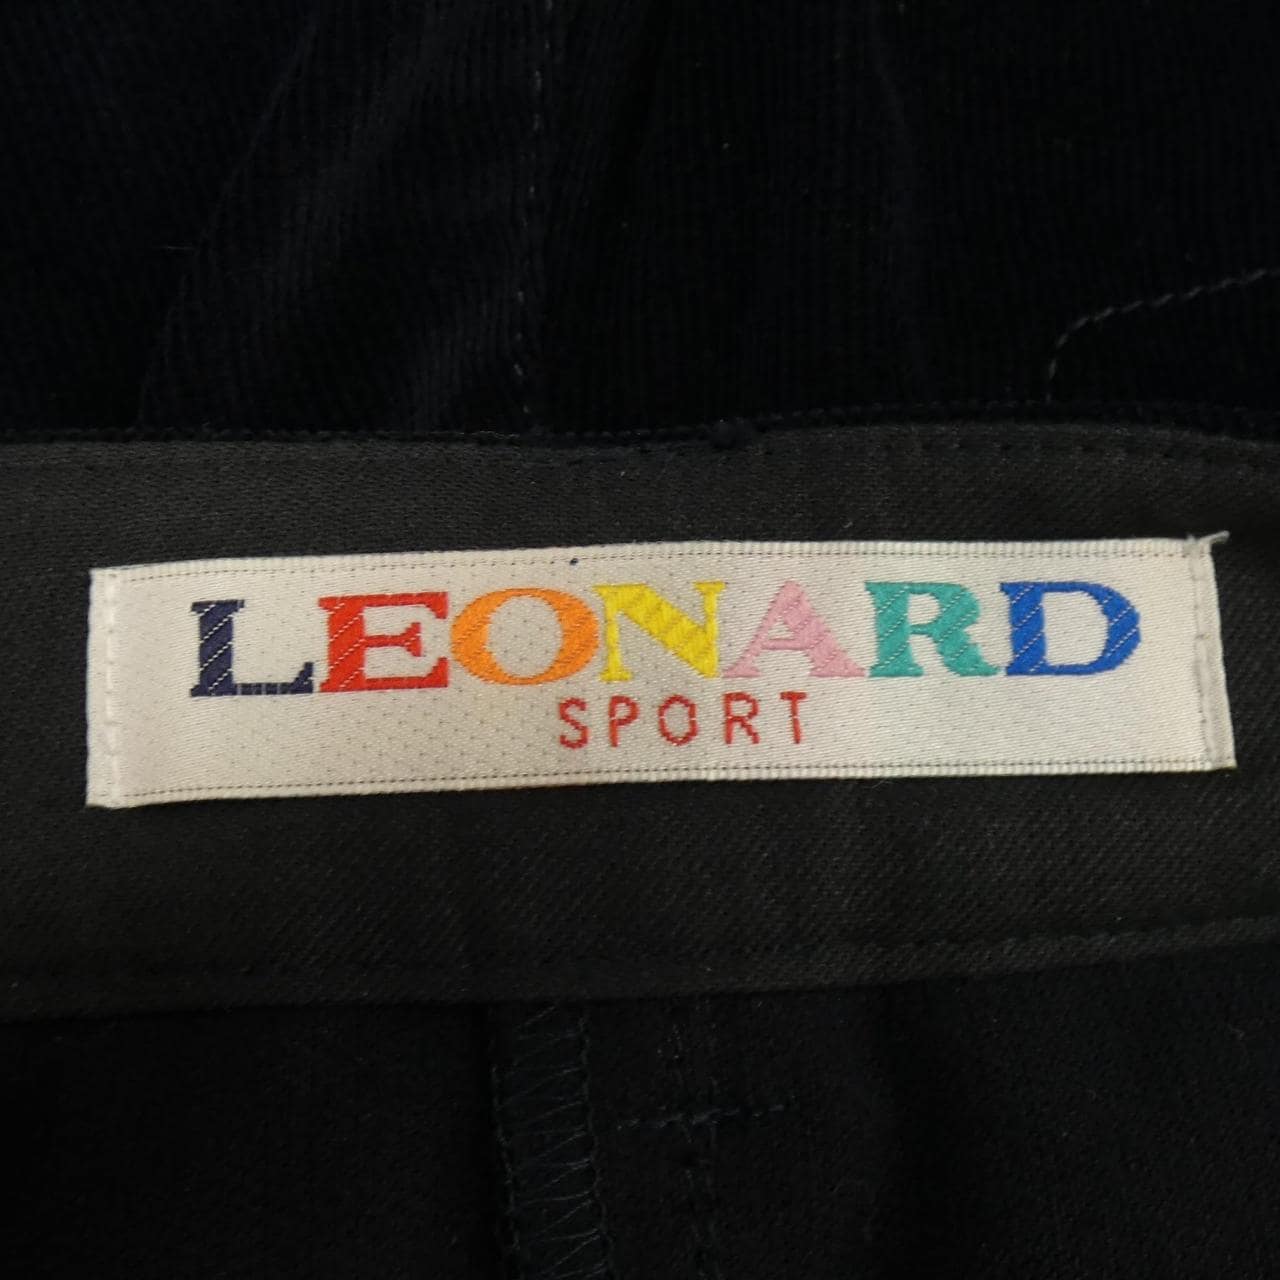 レオナールスポーツ LEONARD SPORT パンツ